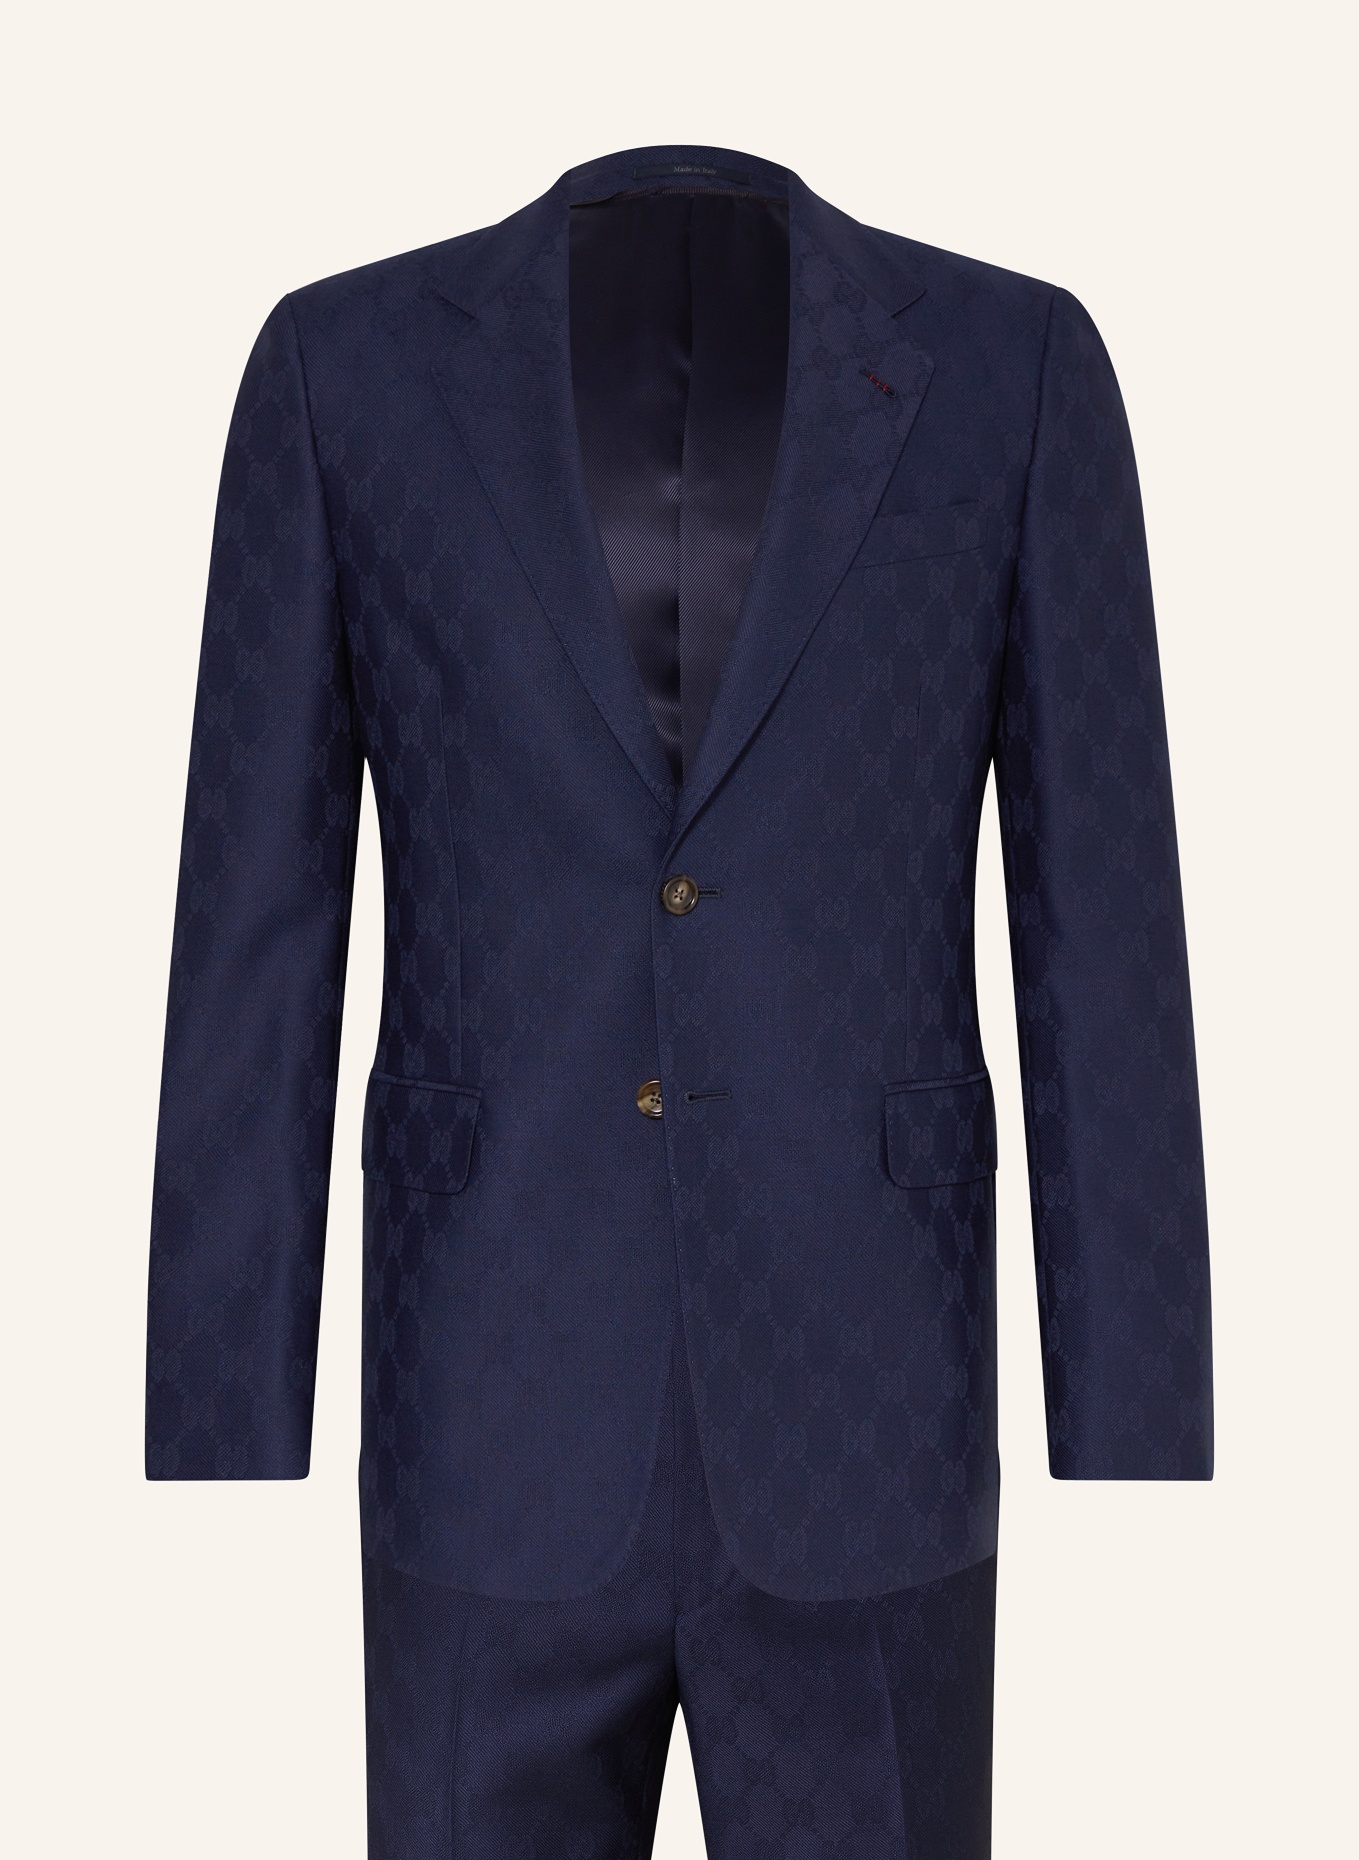 GUCCI Anzug Extra Slim Fit, Farbe: 4240 Caspian (Bild 1)